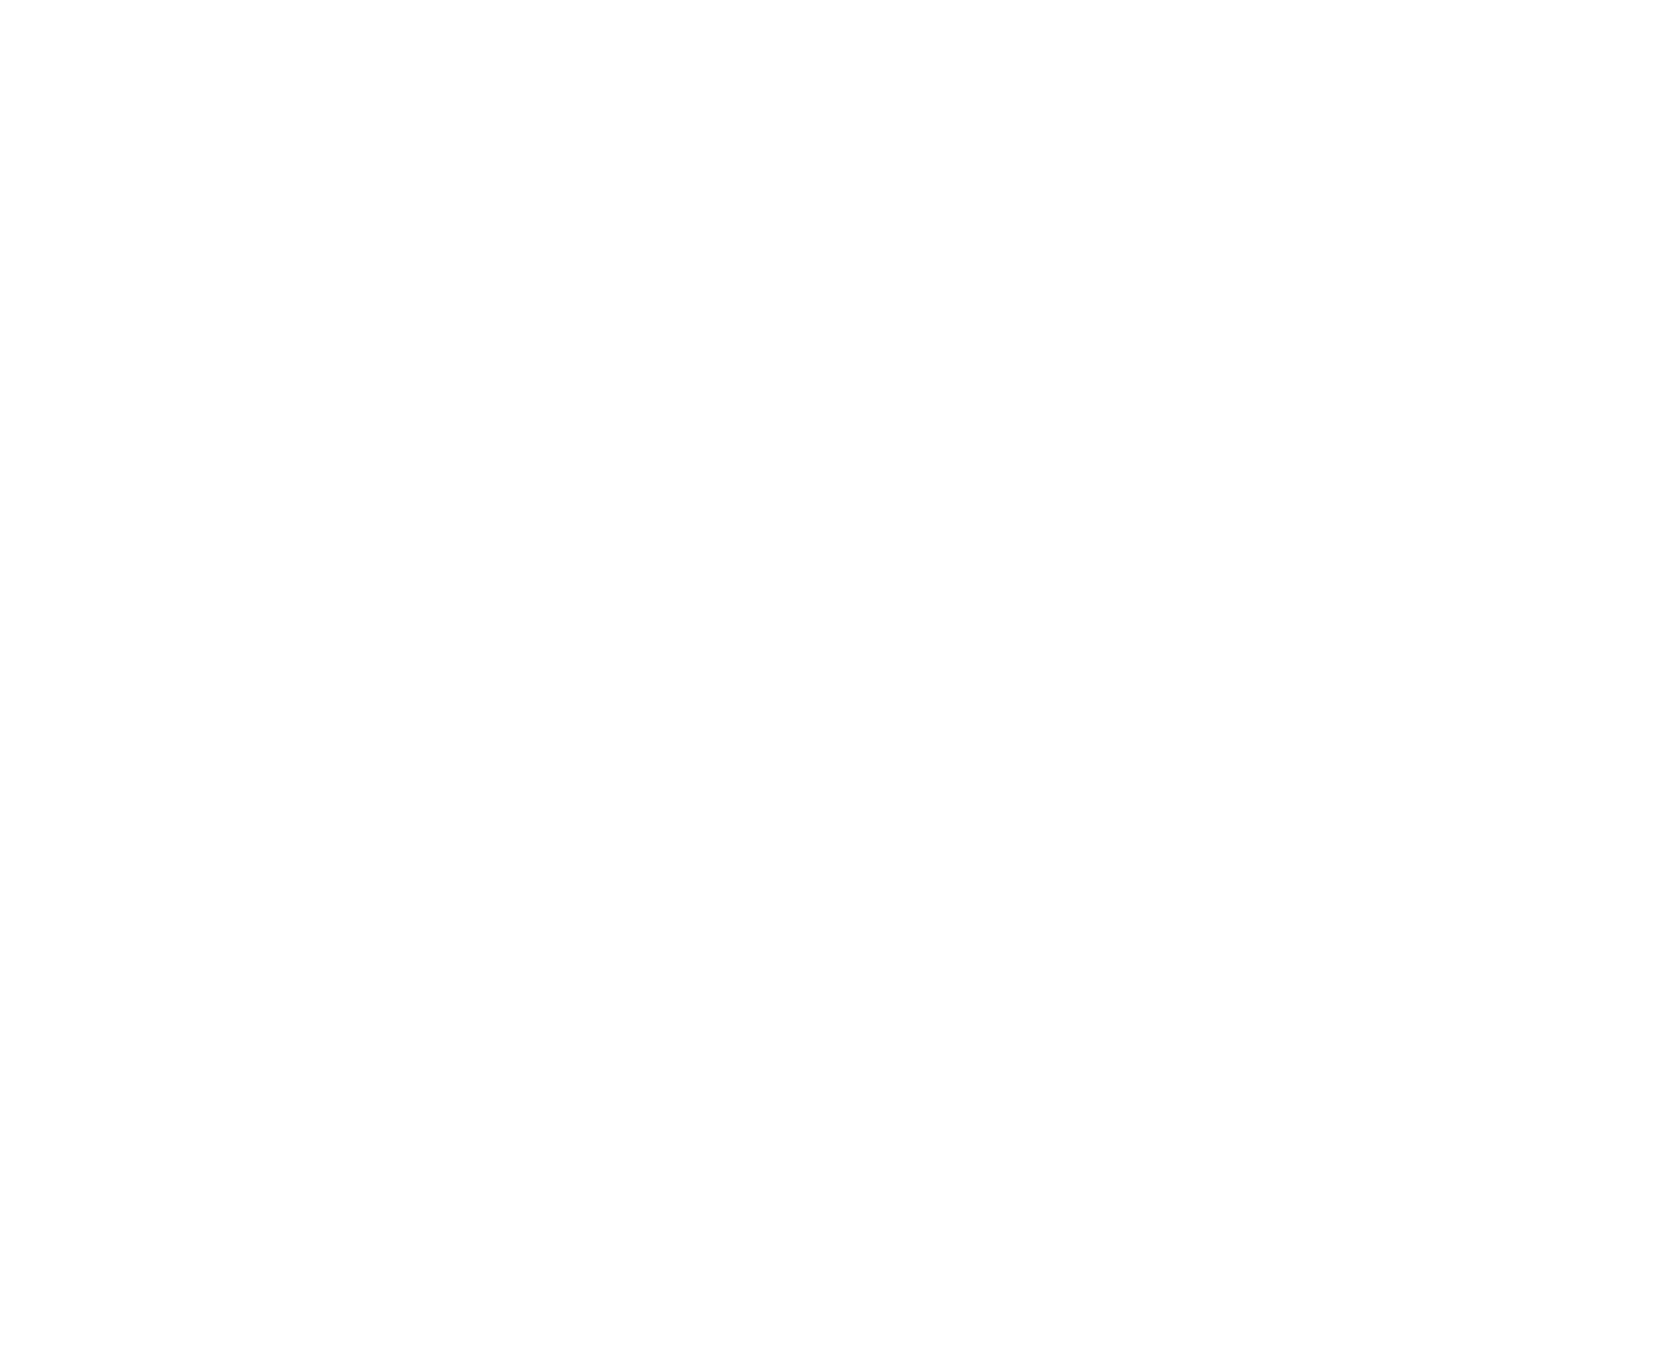 Приказ заведующего артиллерийской частью Казанского военного округа генерал-лейтенанта Йордана № 53 об улучшении строевого и хозяйственного состояния артиллерийских команд и нижних чинов в Оренбурге, Казани, Ижевске, Астрахани. 4 сентября 1887 г.